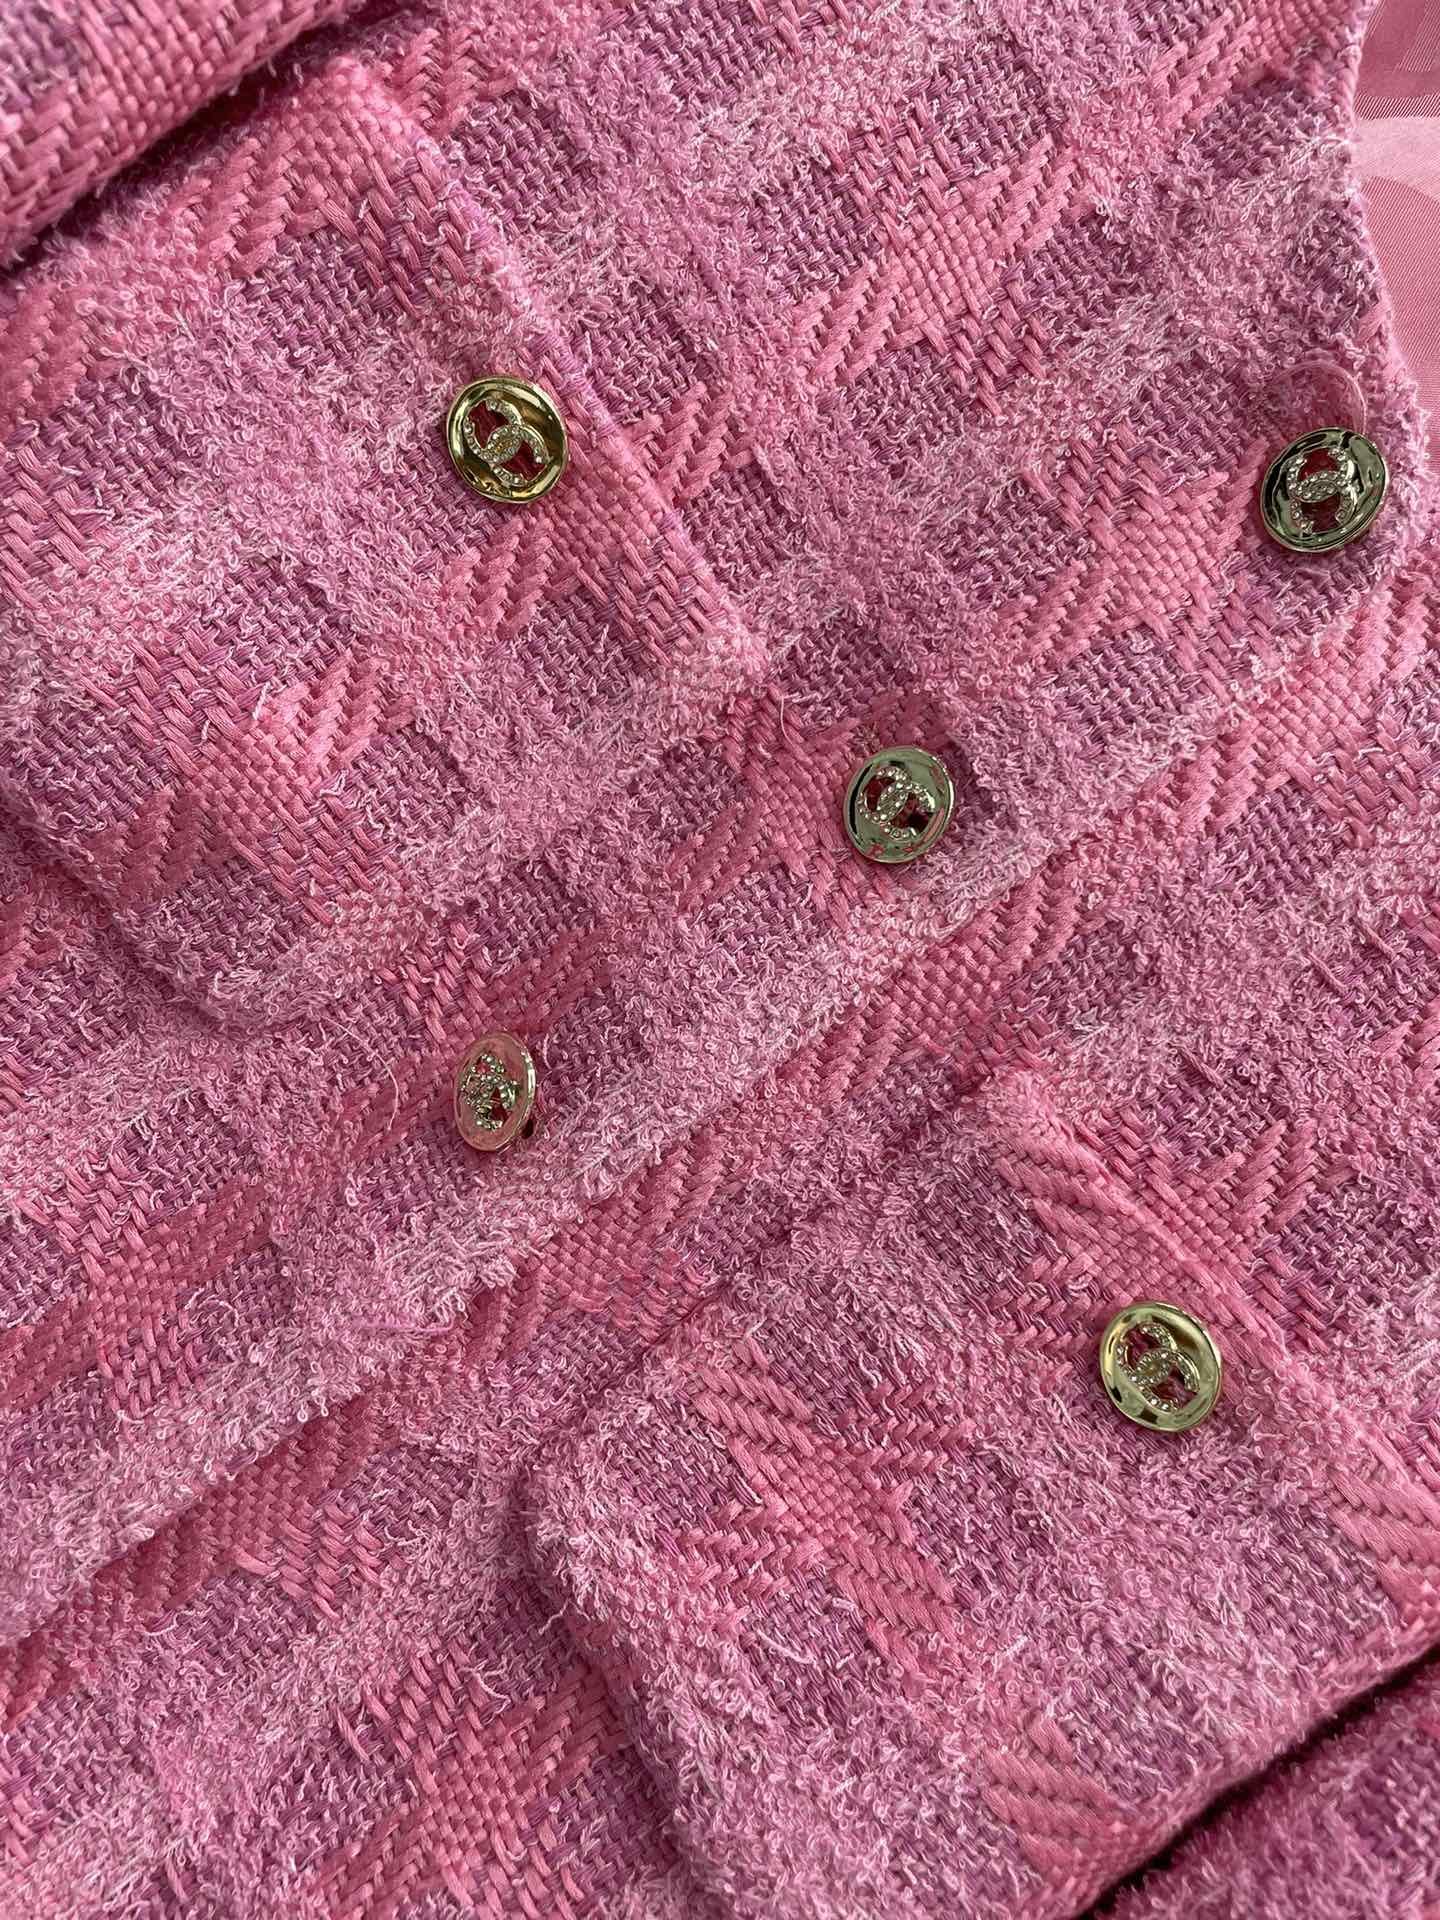 小香24春夏粉色粗花呢灯笼袖圆领外套非常适合春天的一件外套手感软糯质地细腻鲜明的温柔粉颜色俏皮活泼又不失